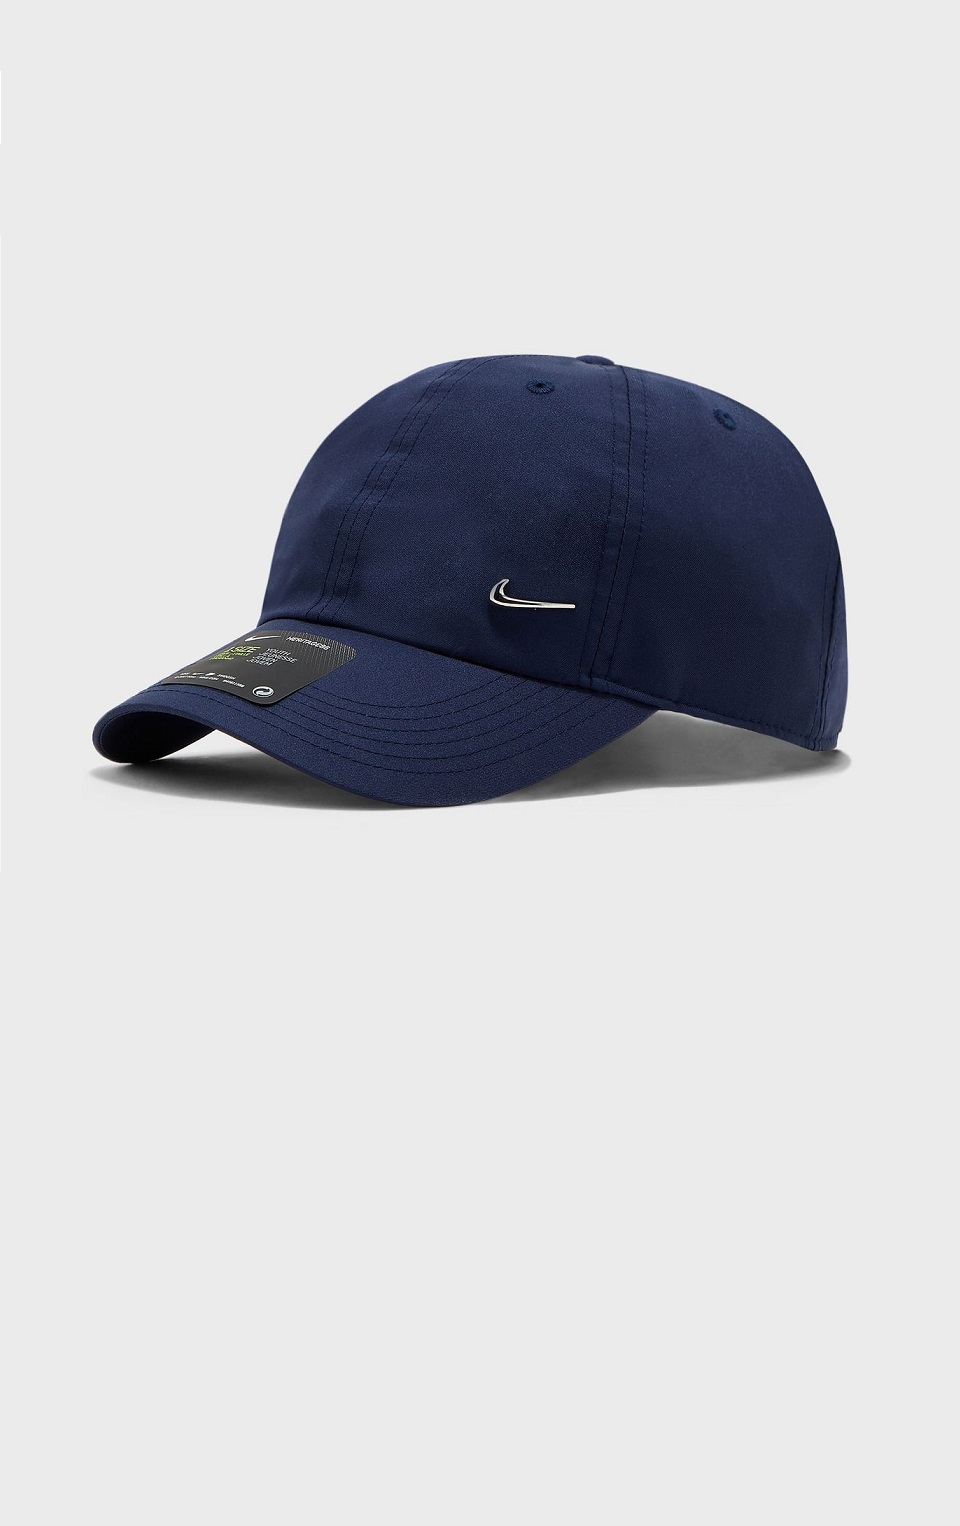 NIKE - Nike Youth Unisex Şapka Lacivert